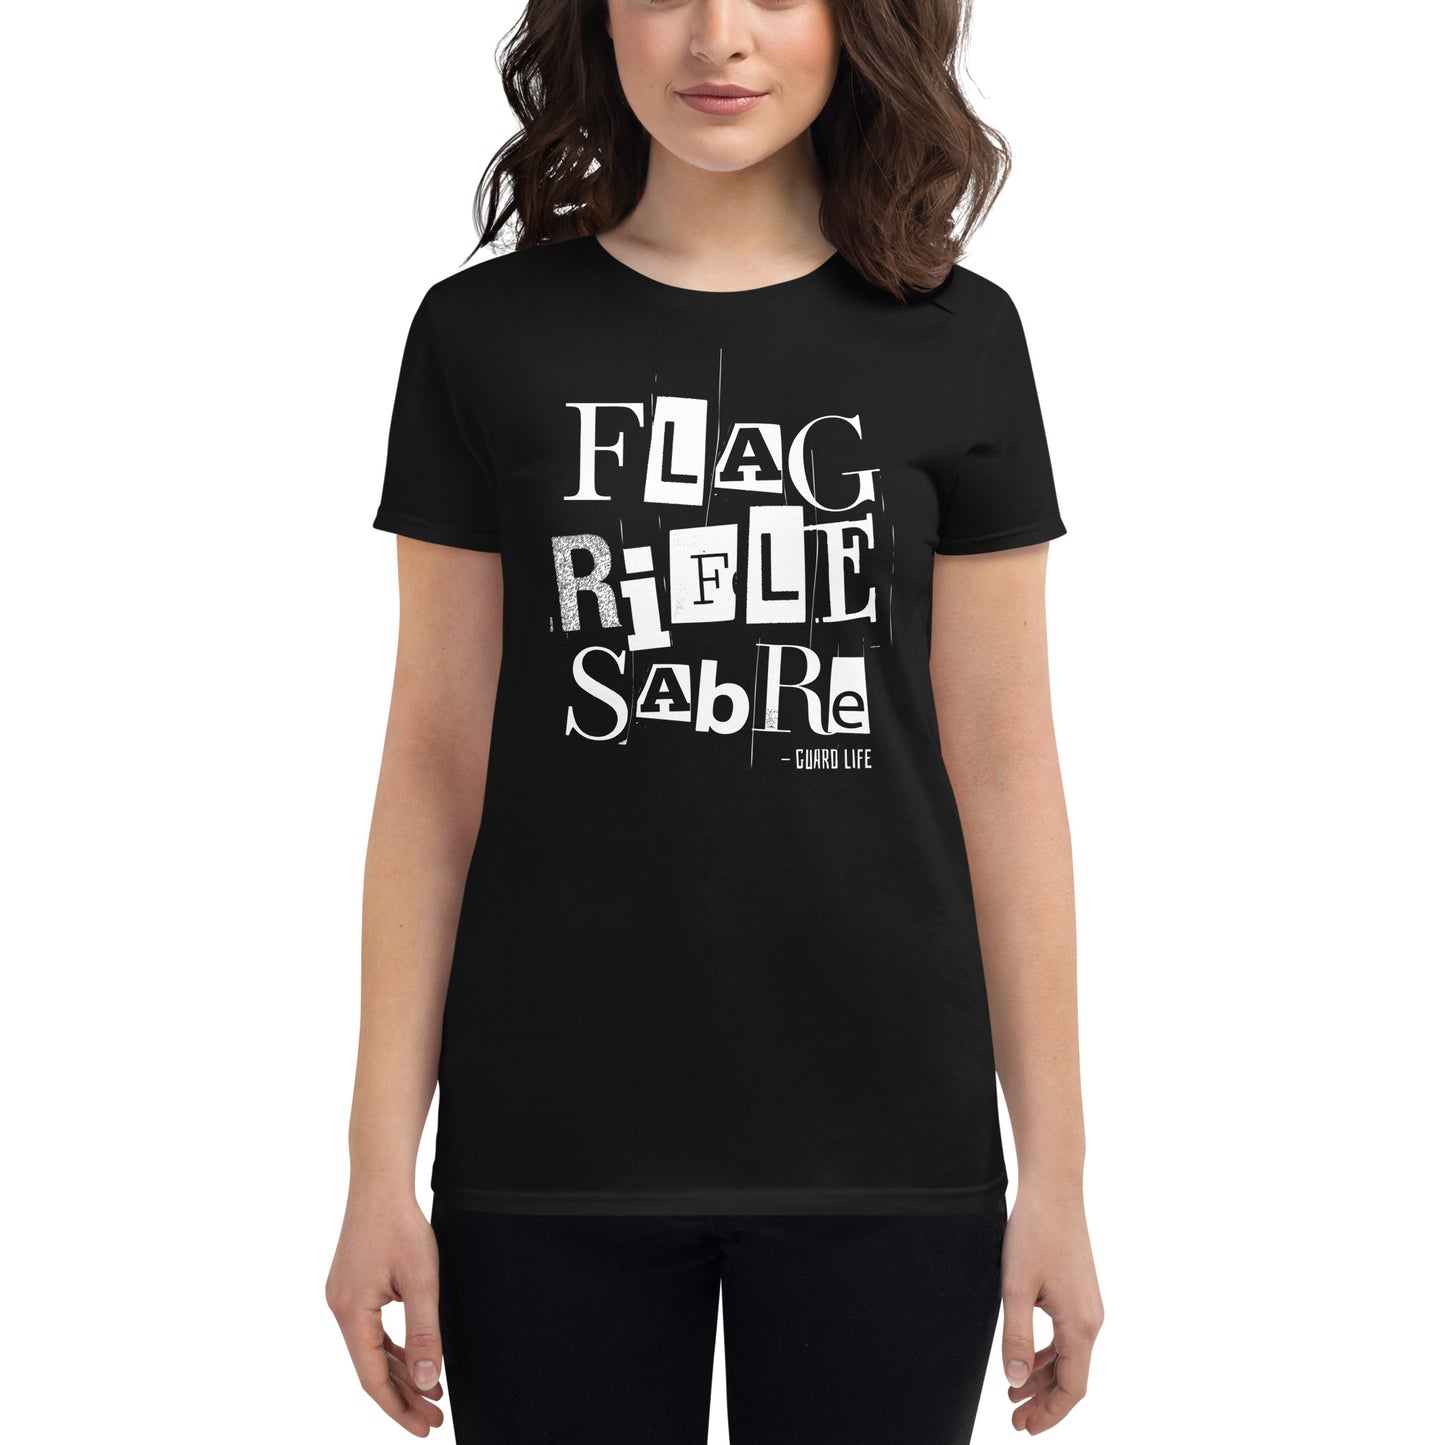 FLAG, SABER, RIFLE (Color Guard) Women's Fashion Fit T-shirt